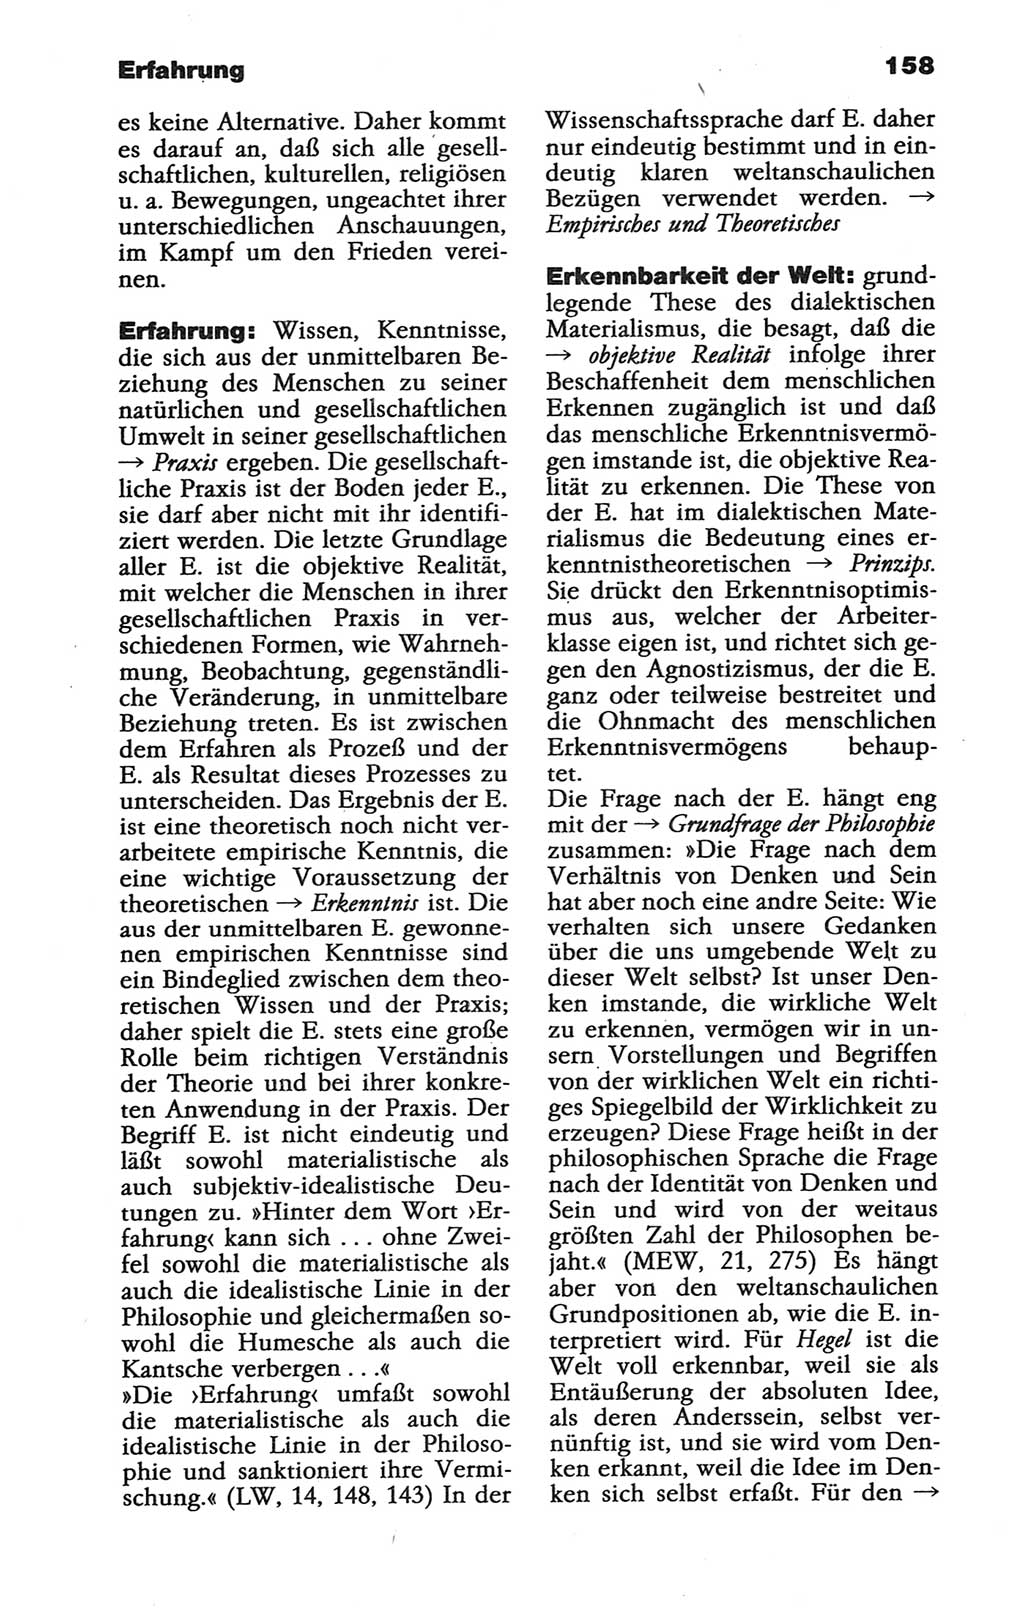 Wörterbuch der marxistisch-leninistischen Philosophie [Deutsche Demokratische Republik (DDR)] 1986, Seite 158 (Wb. ML Phil. DDR 1986, S. 158)